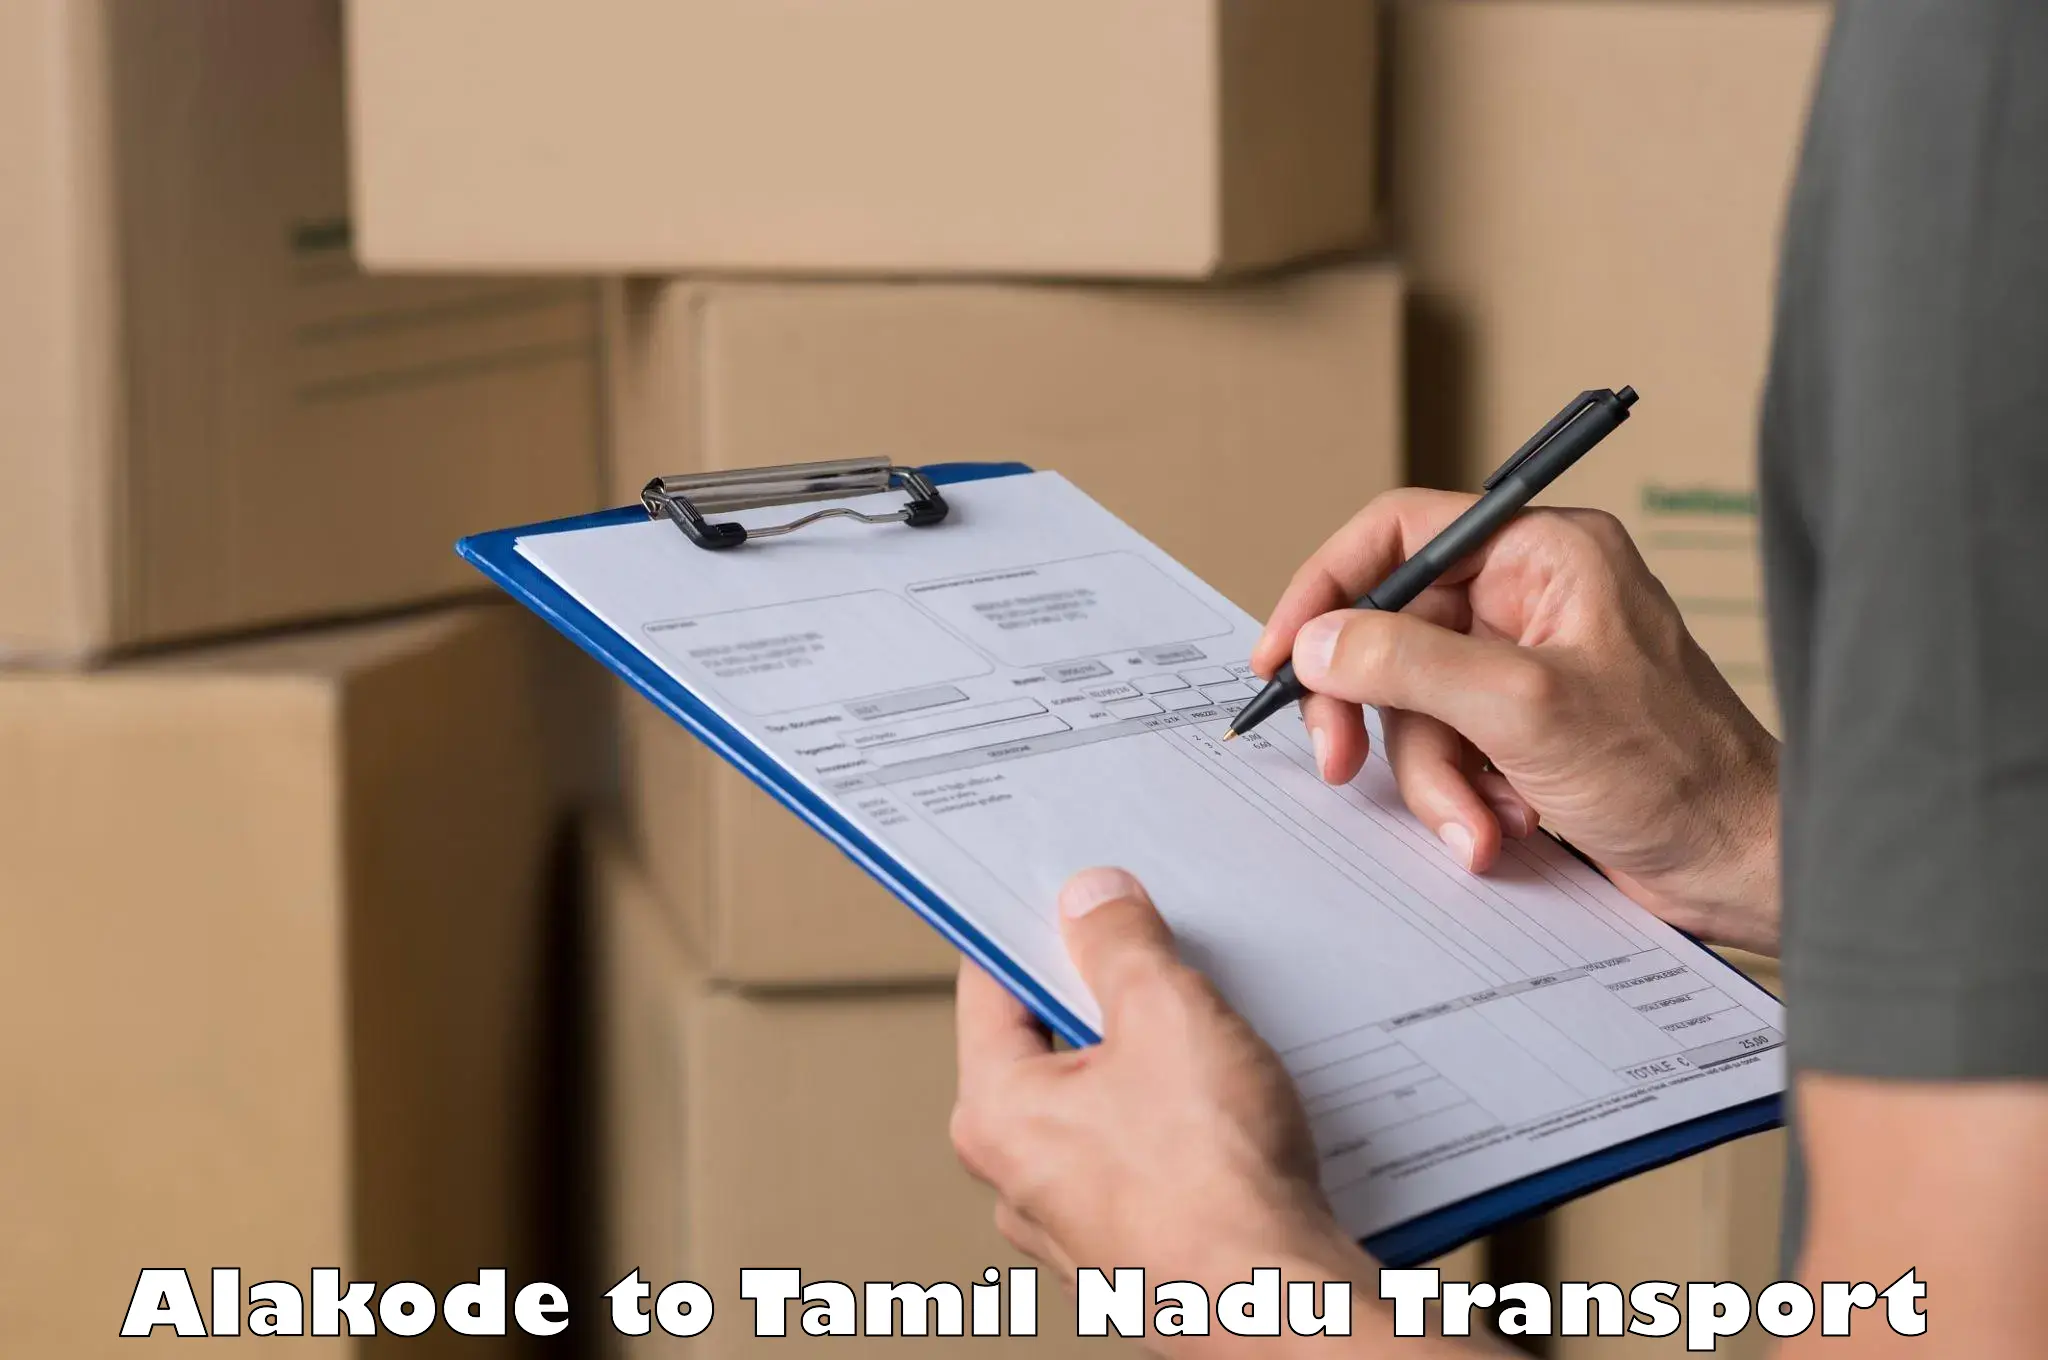 Container transport service Alakode to Kumbakonam